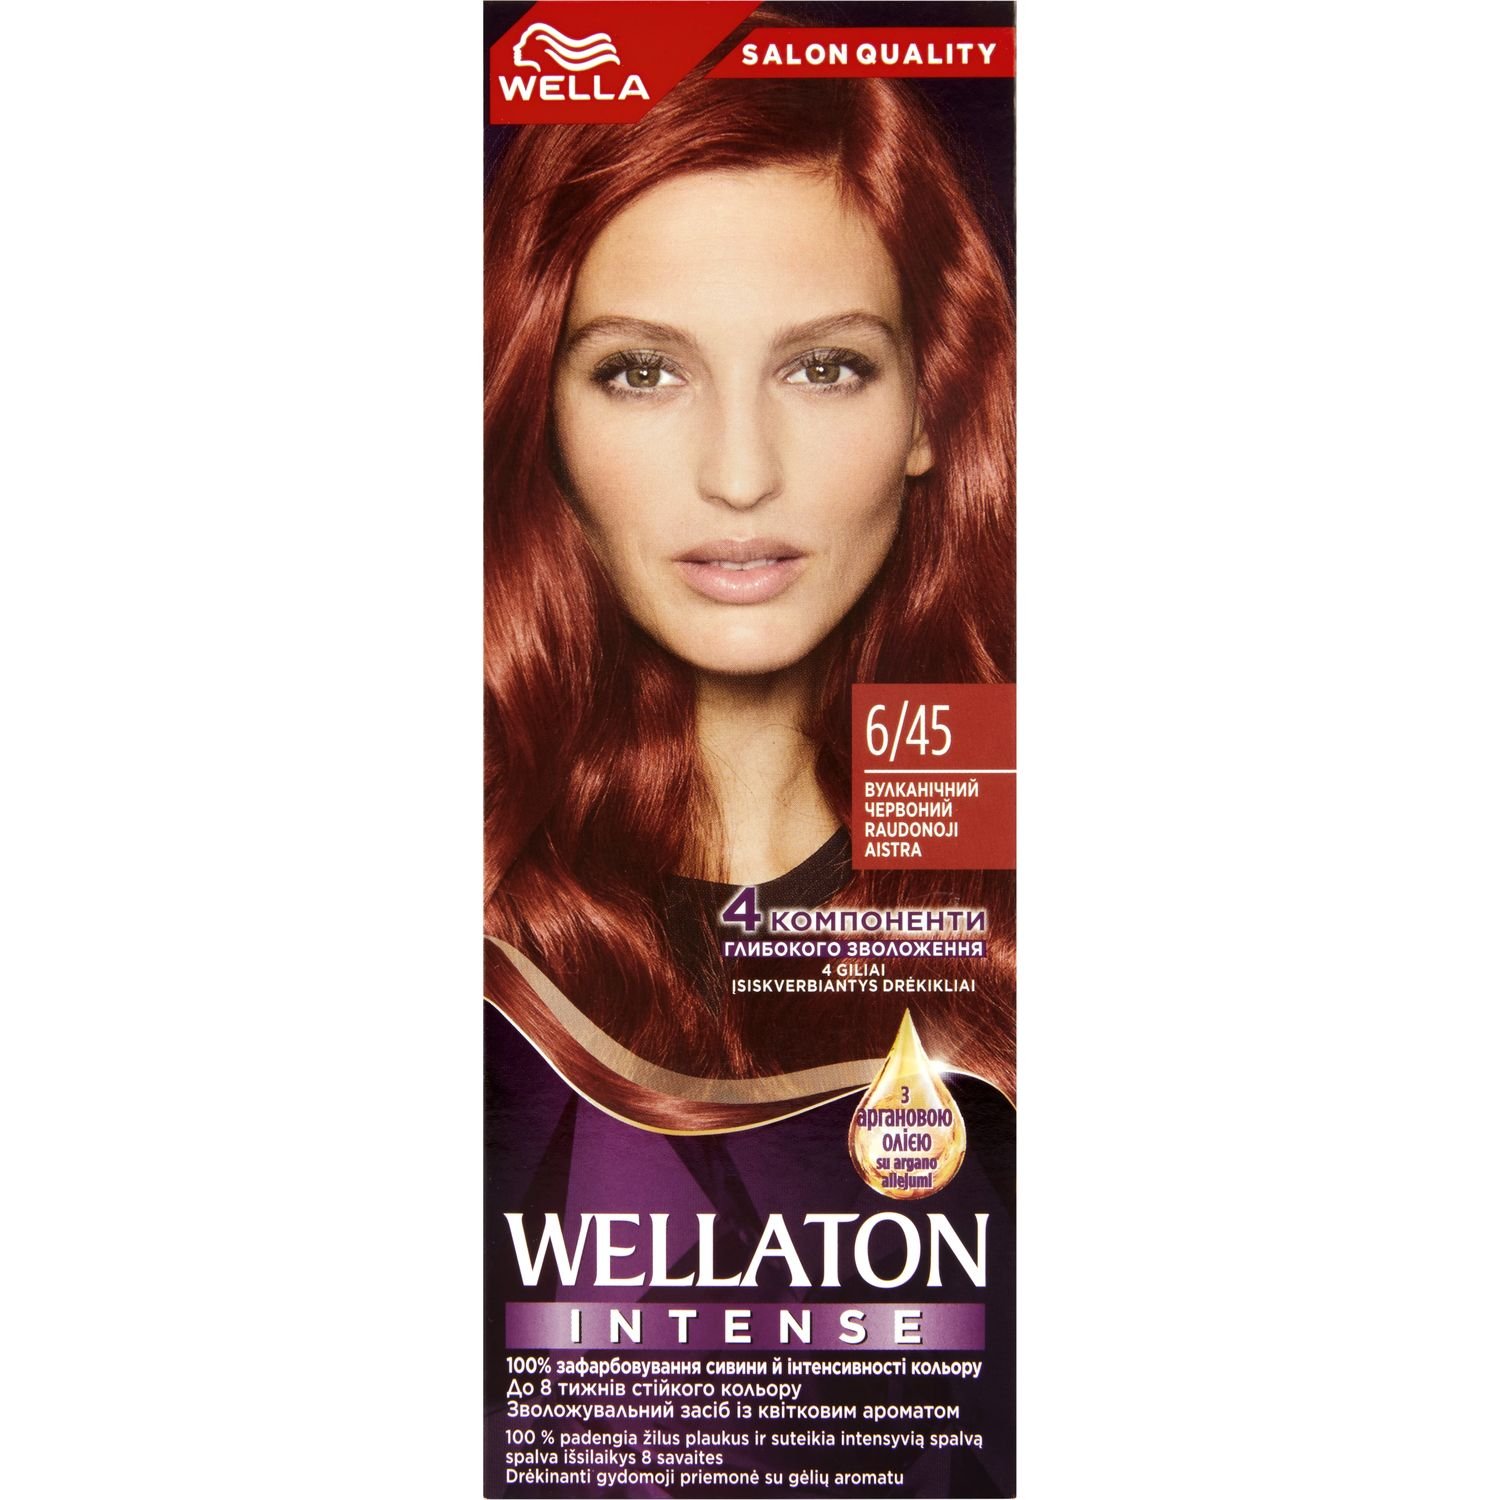 Интенсивная крем-краска для волос Wellaton, оттенок 6/45 (Вулканический красный), 110 мл - фото 1